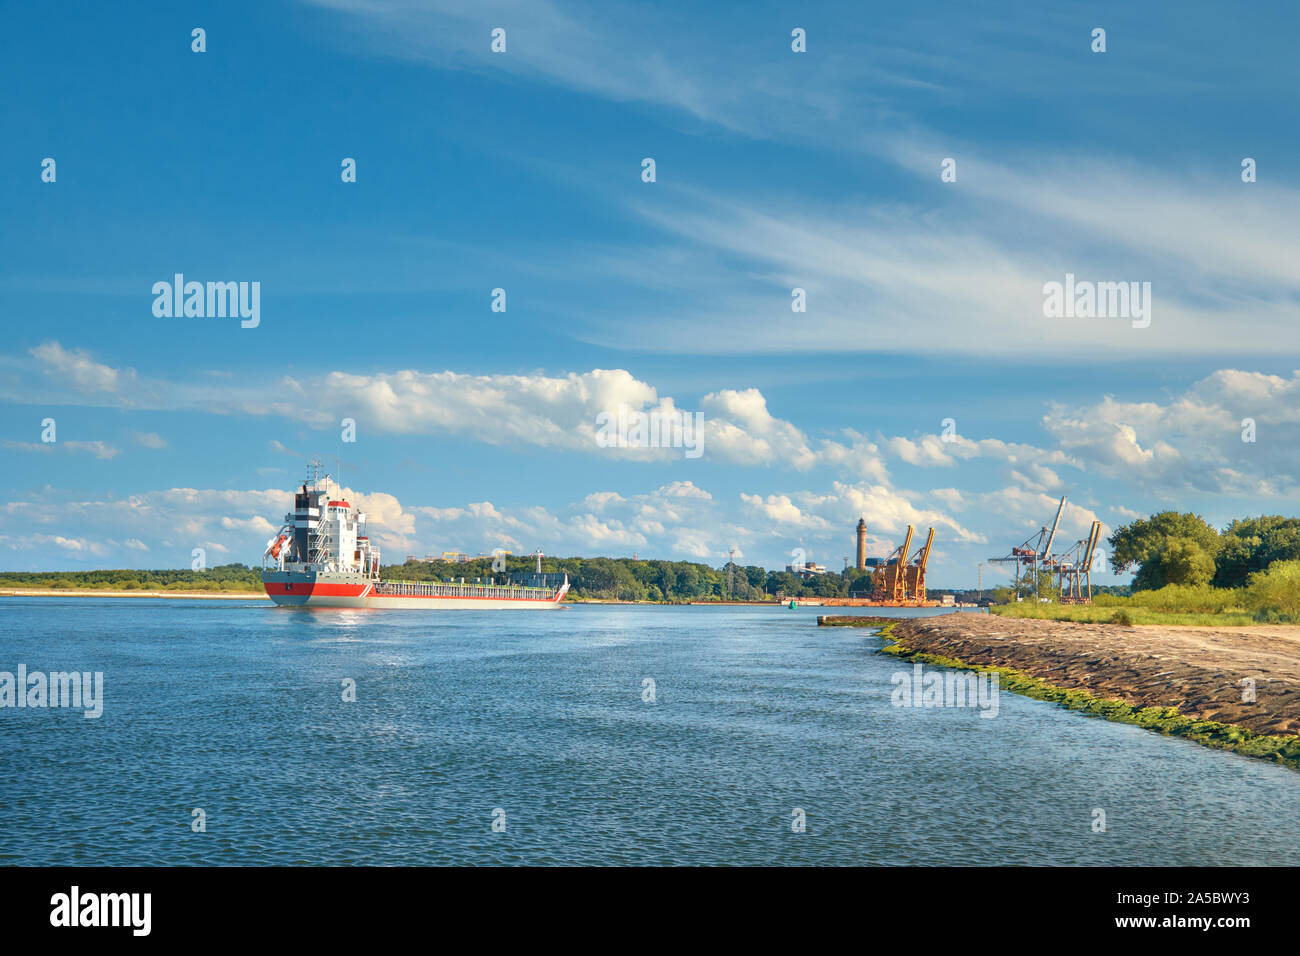 Große Container Cargo Schiff Die Häfen Swinoujscie, Polen, an einem sonnigen Tag mit blauem Himmel und Wolken Stockfoto